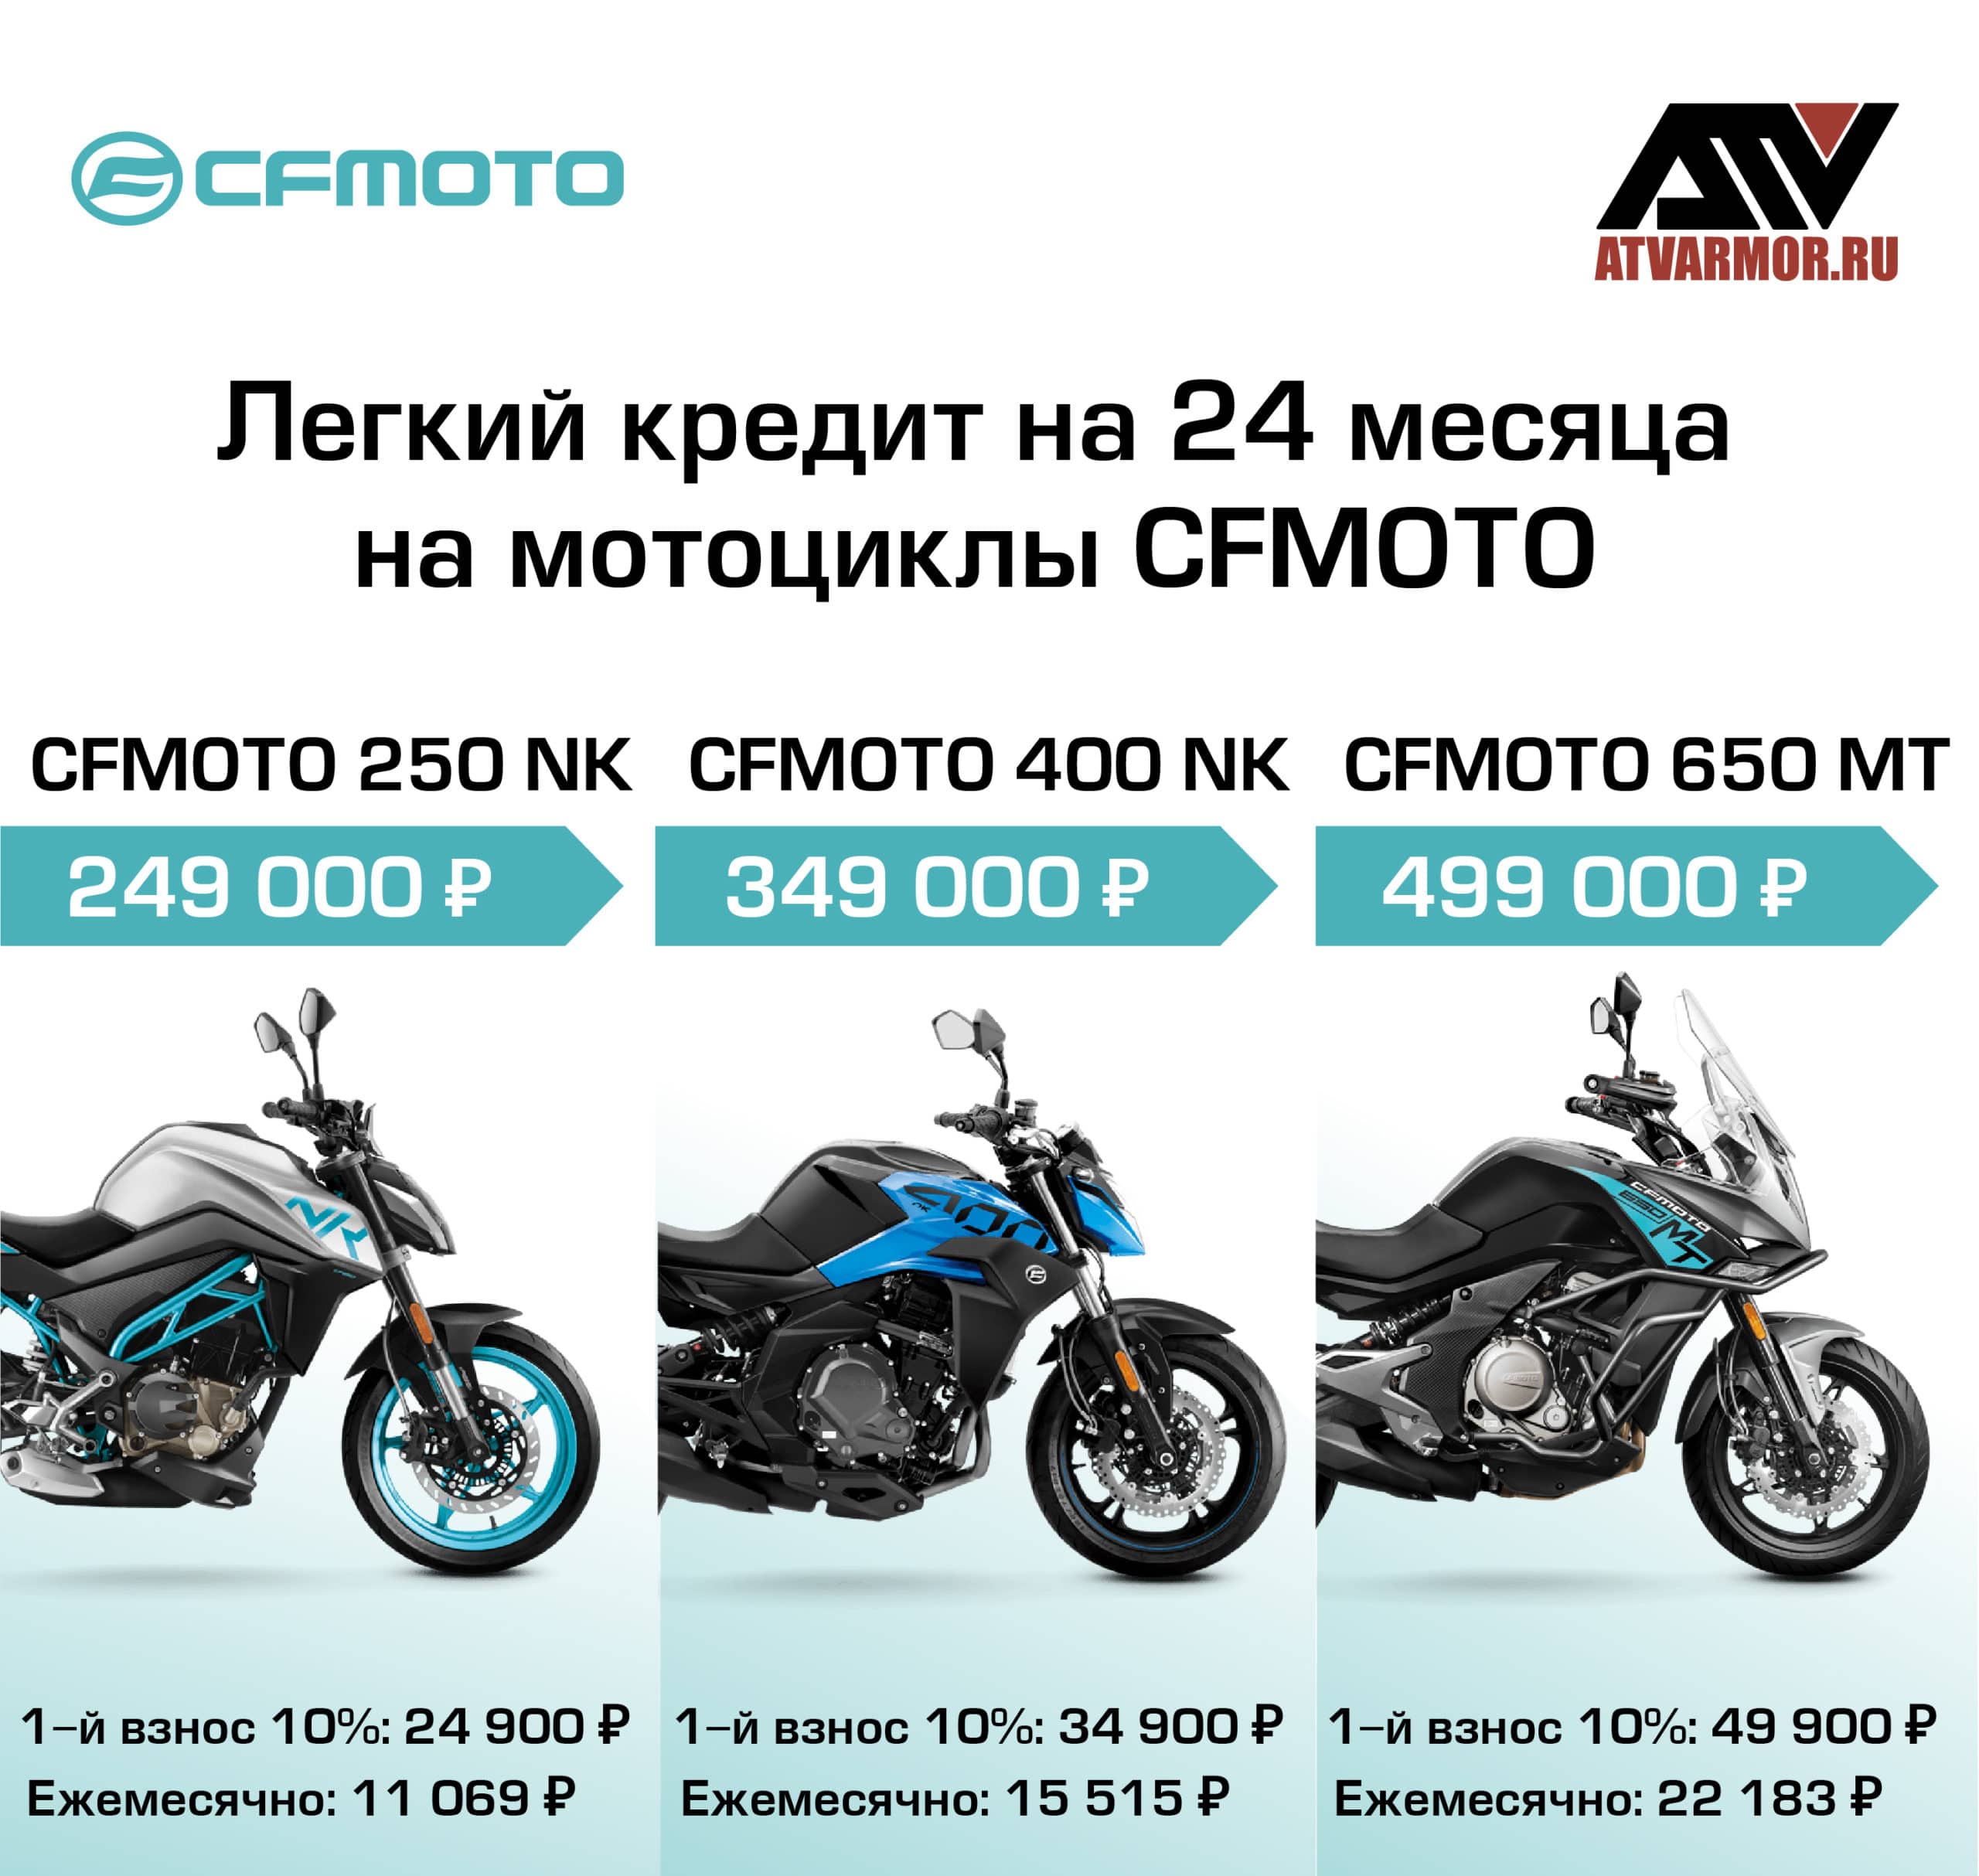 Рассрочка и легкий кредит на мотоциклы CFMOTO!